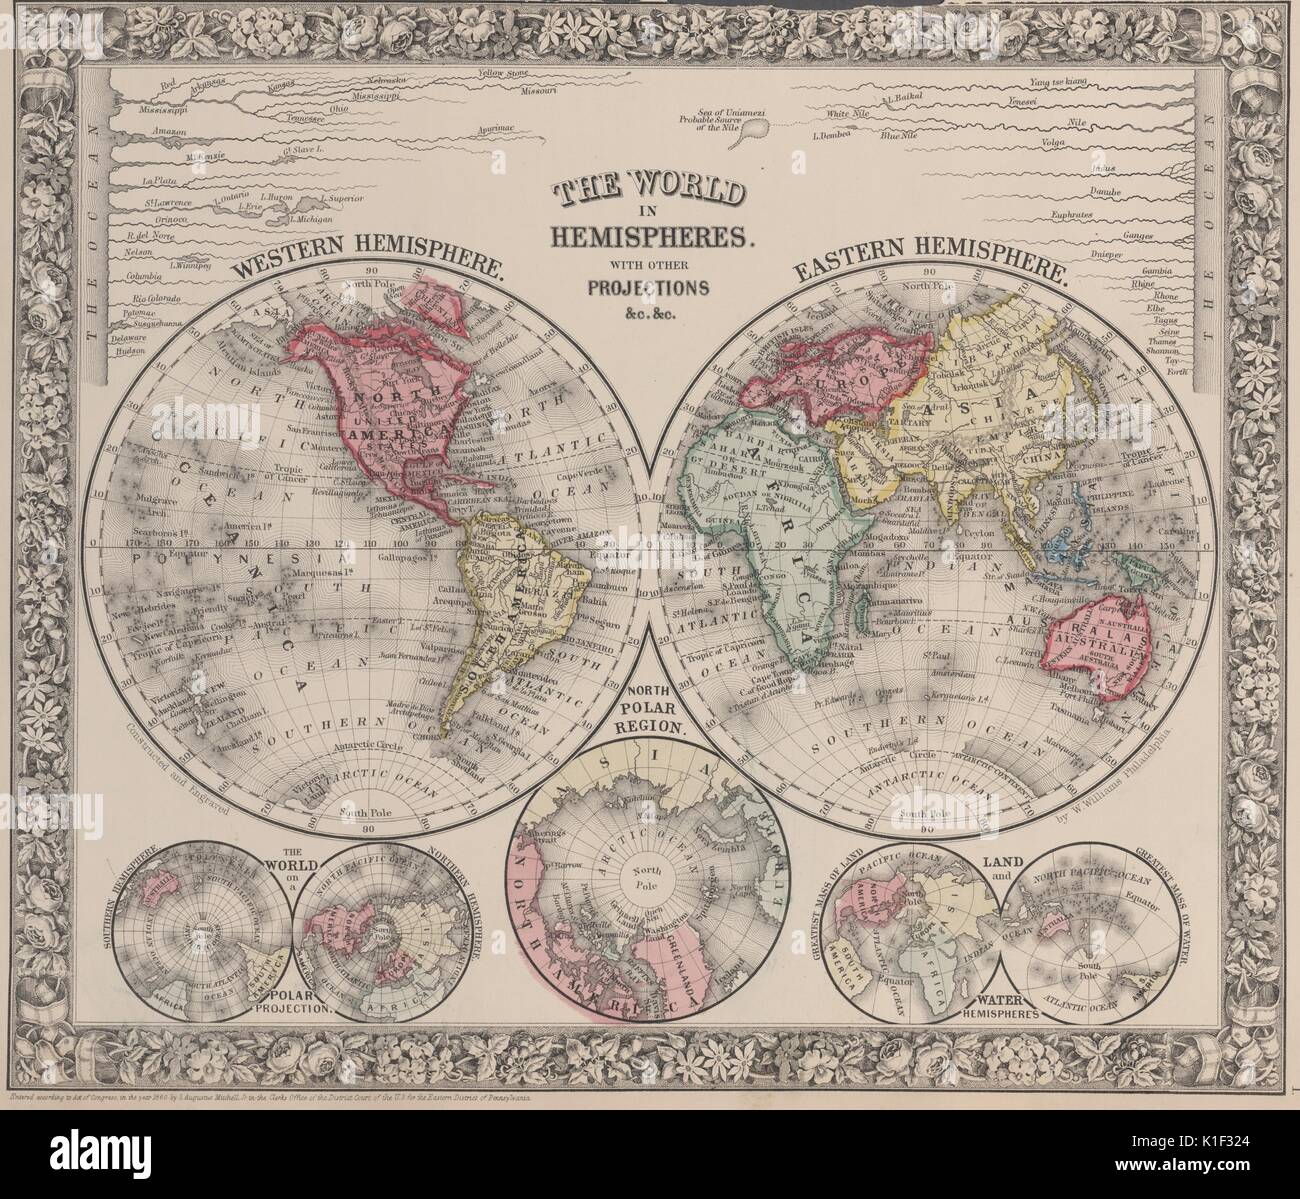 Mappa del mondo in due emisferi, con altre proiezioni inclusa, 1900. Dalla Biblioteca Pubblica di New York. Foto Stock